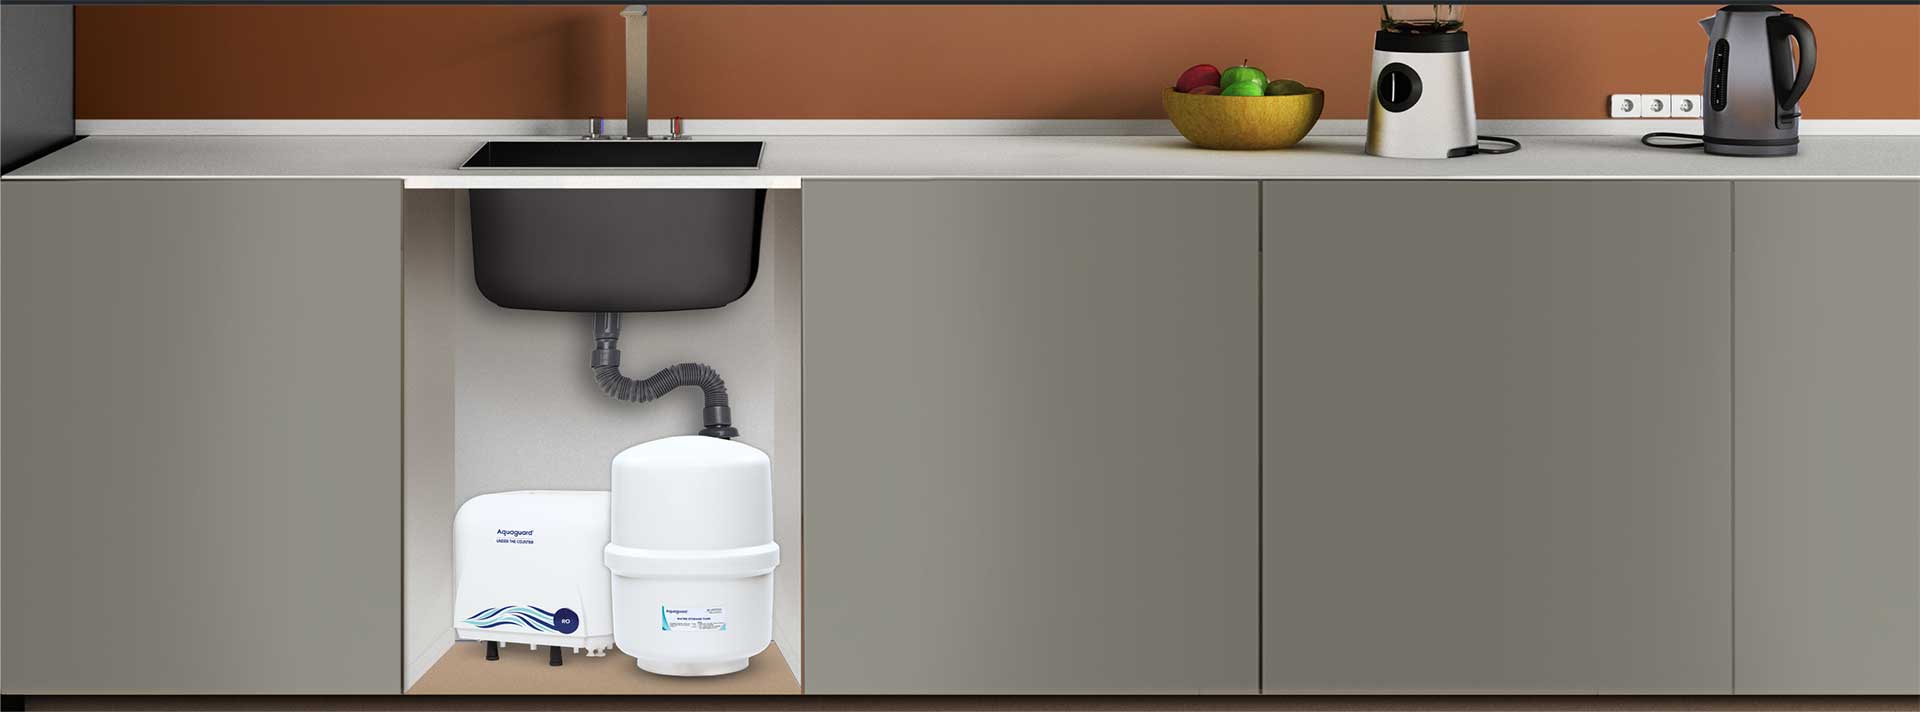 under kitchen sink water purifier costco